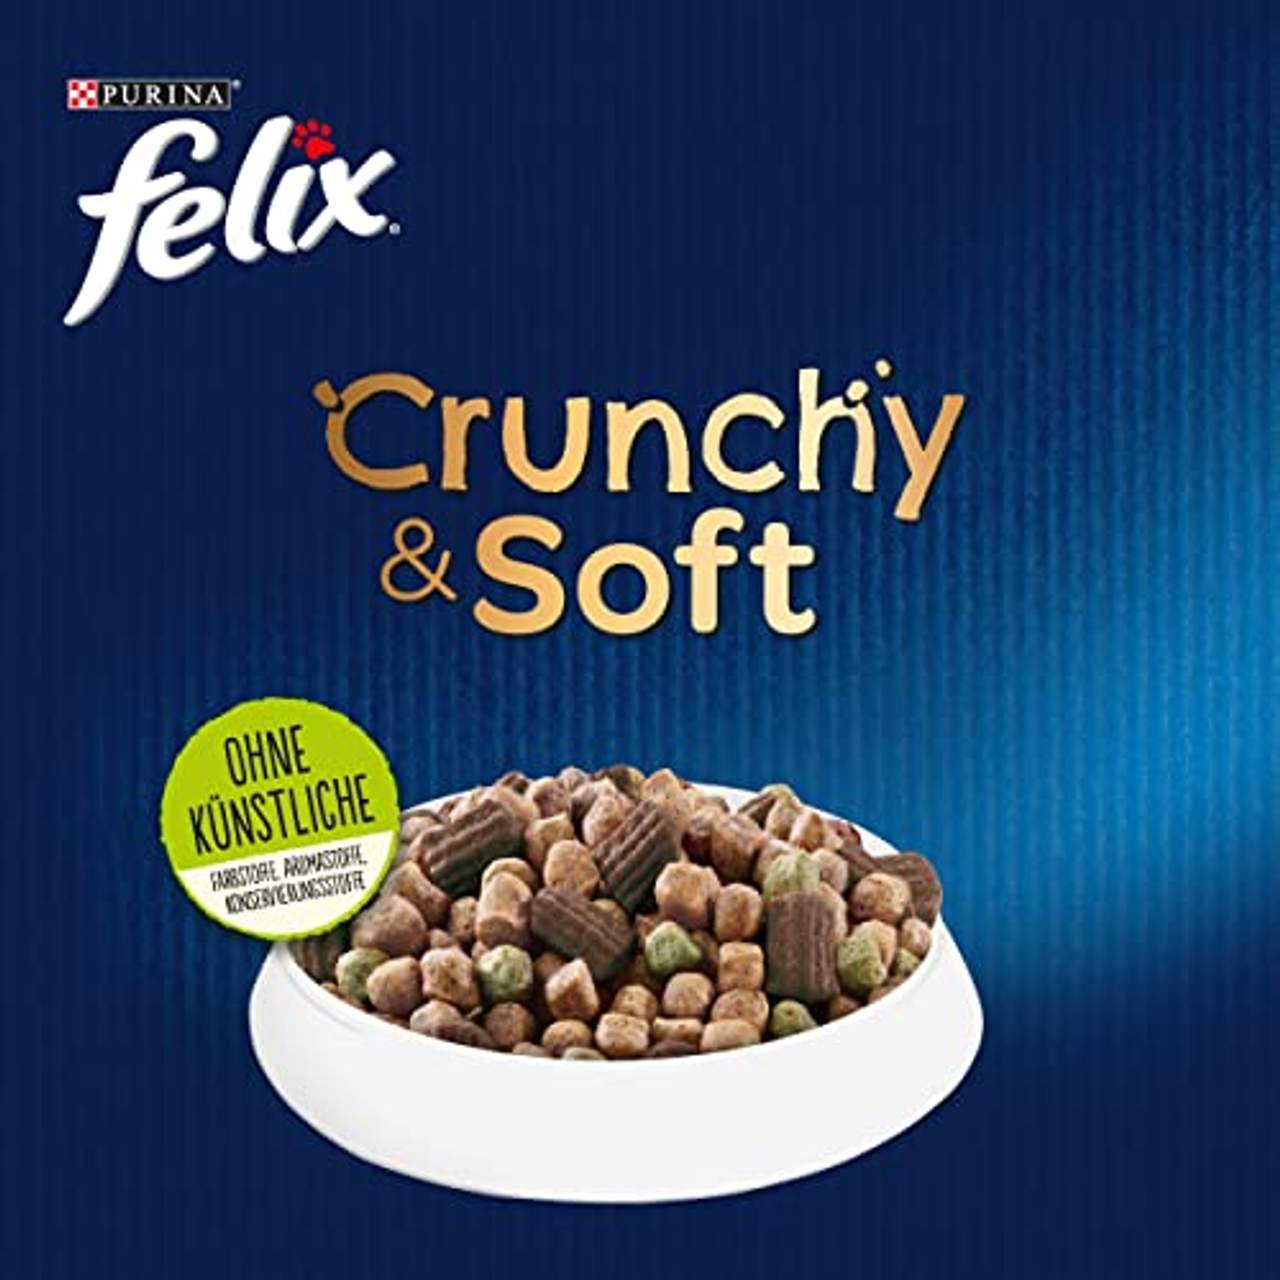 FELIX Crunchy & Soft Junior Kittenfutter trocken